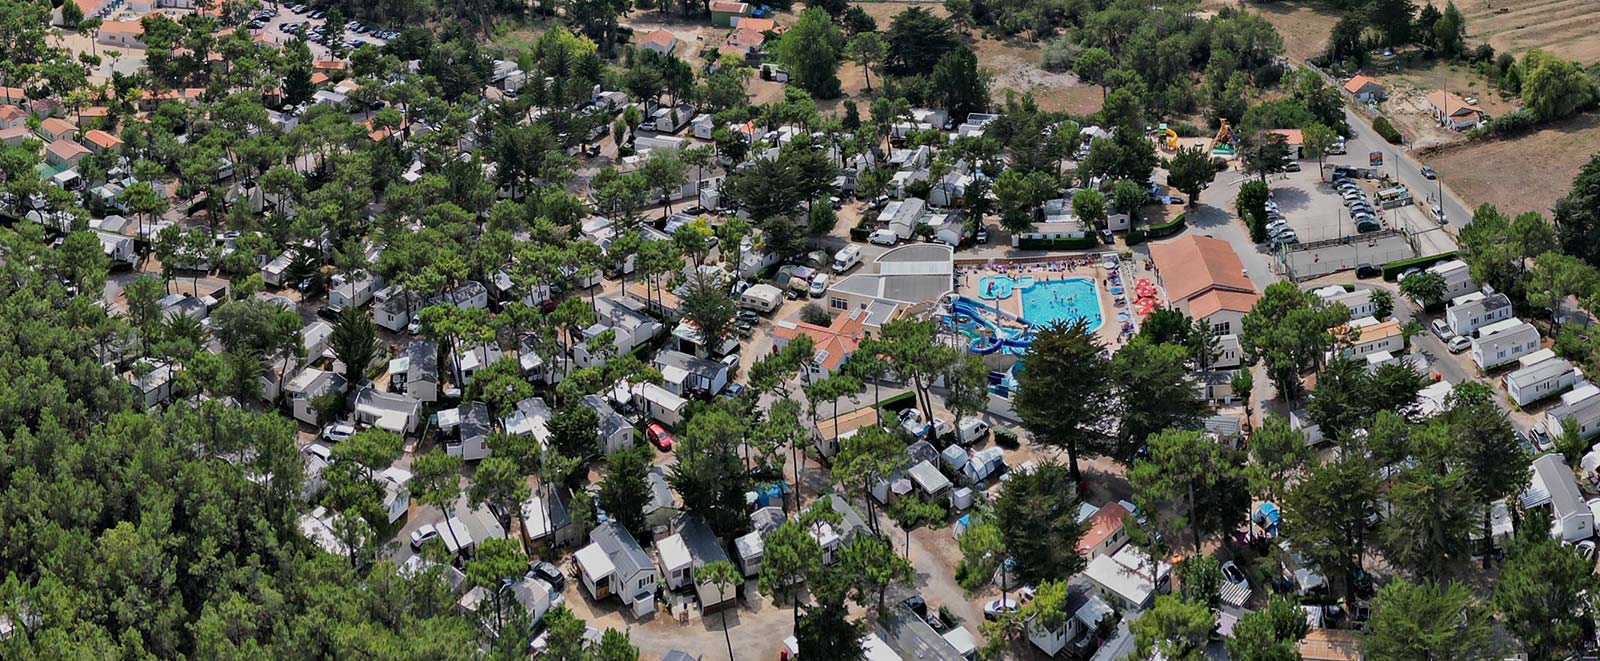 Aerial view of Le Clos des Pins campsite in Saint-Hilaire de Riez